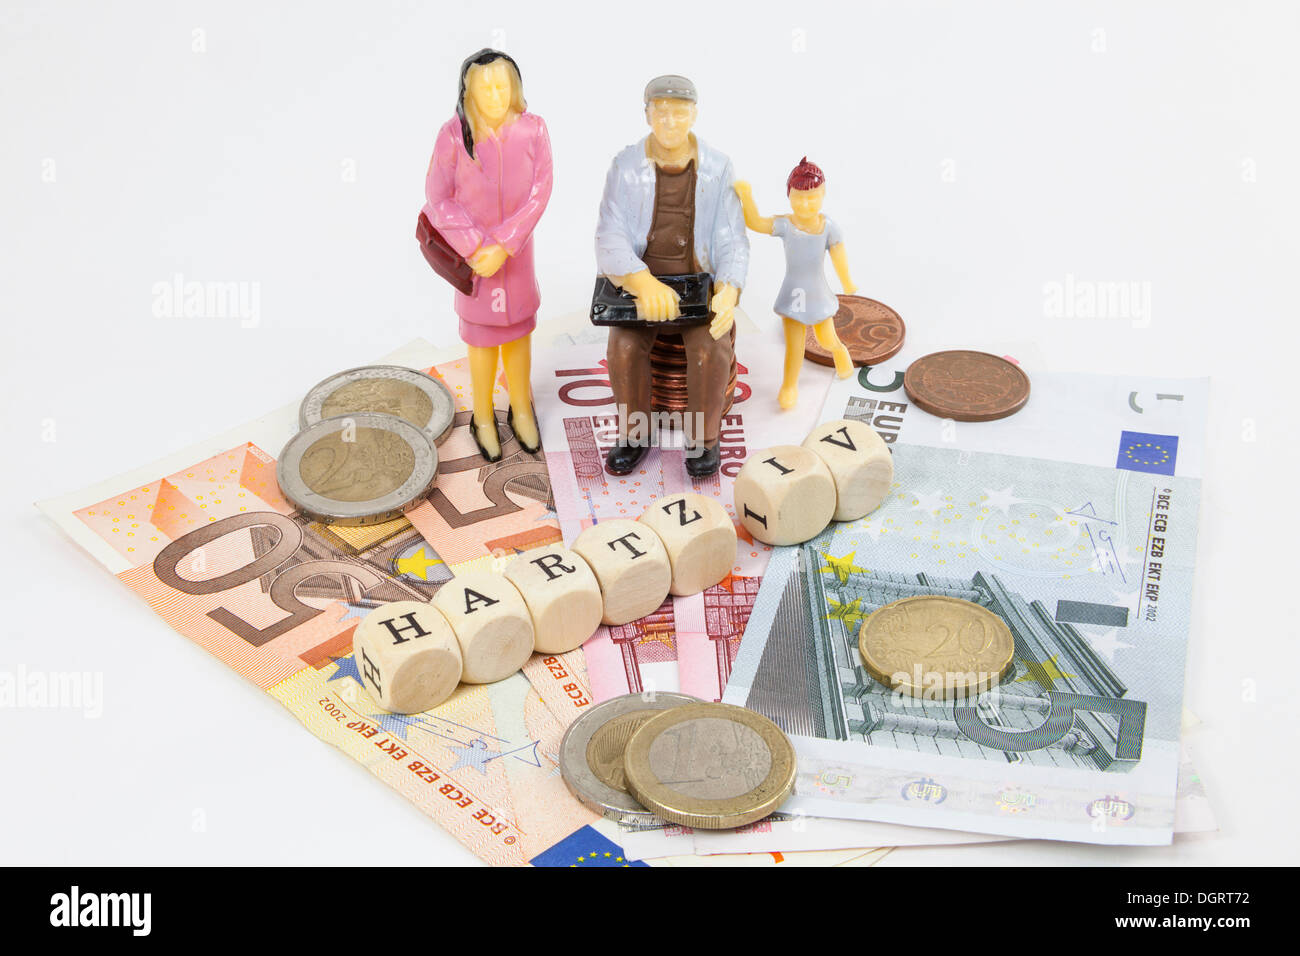 Miniaturfiguren von einer Arbeiterfamilie, Euro-Banknoten, Brief Würfel bilden das Wort "Hartz IV", deutsche Einkommensstützung Stockfoto